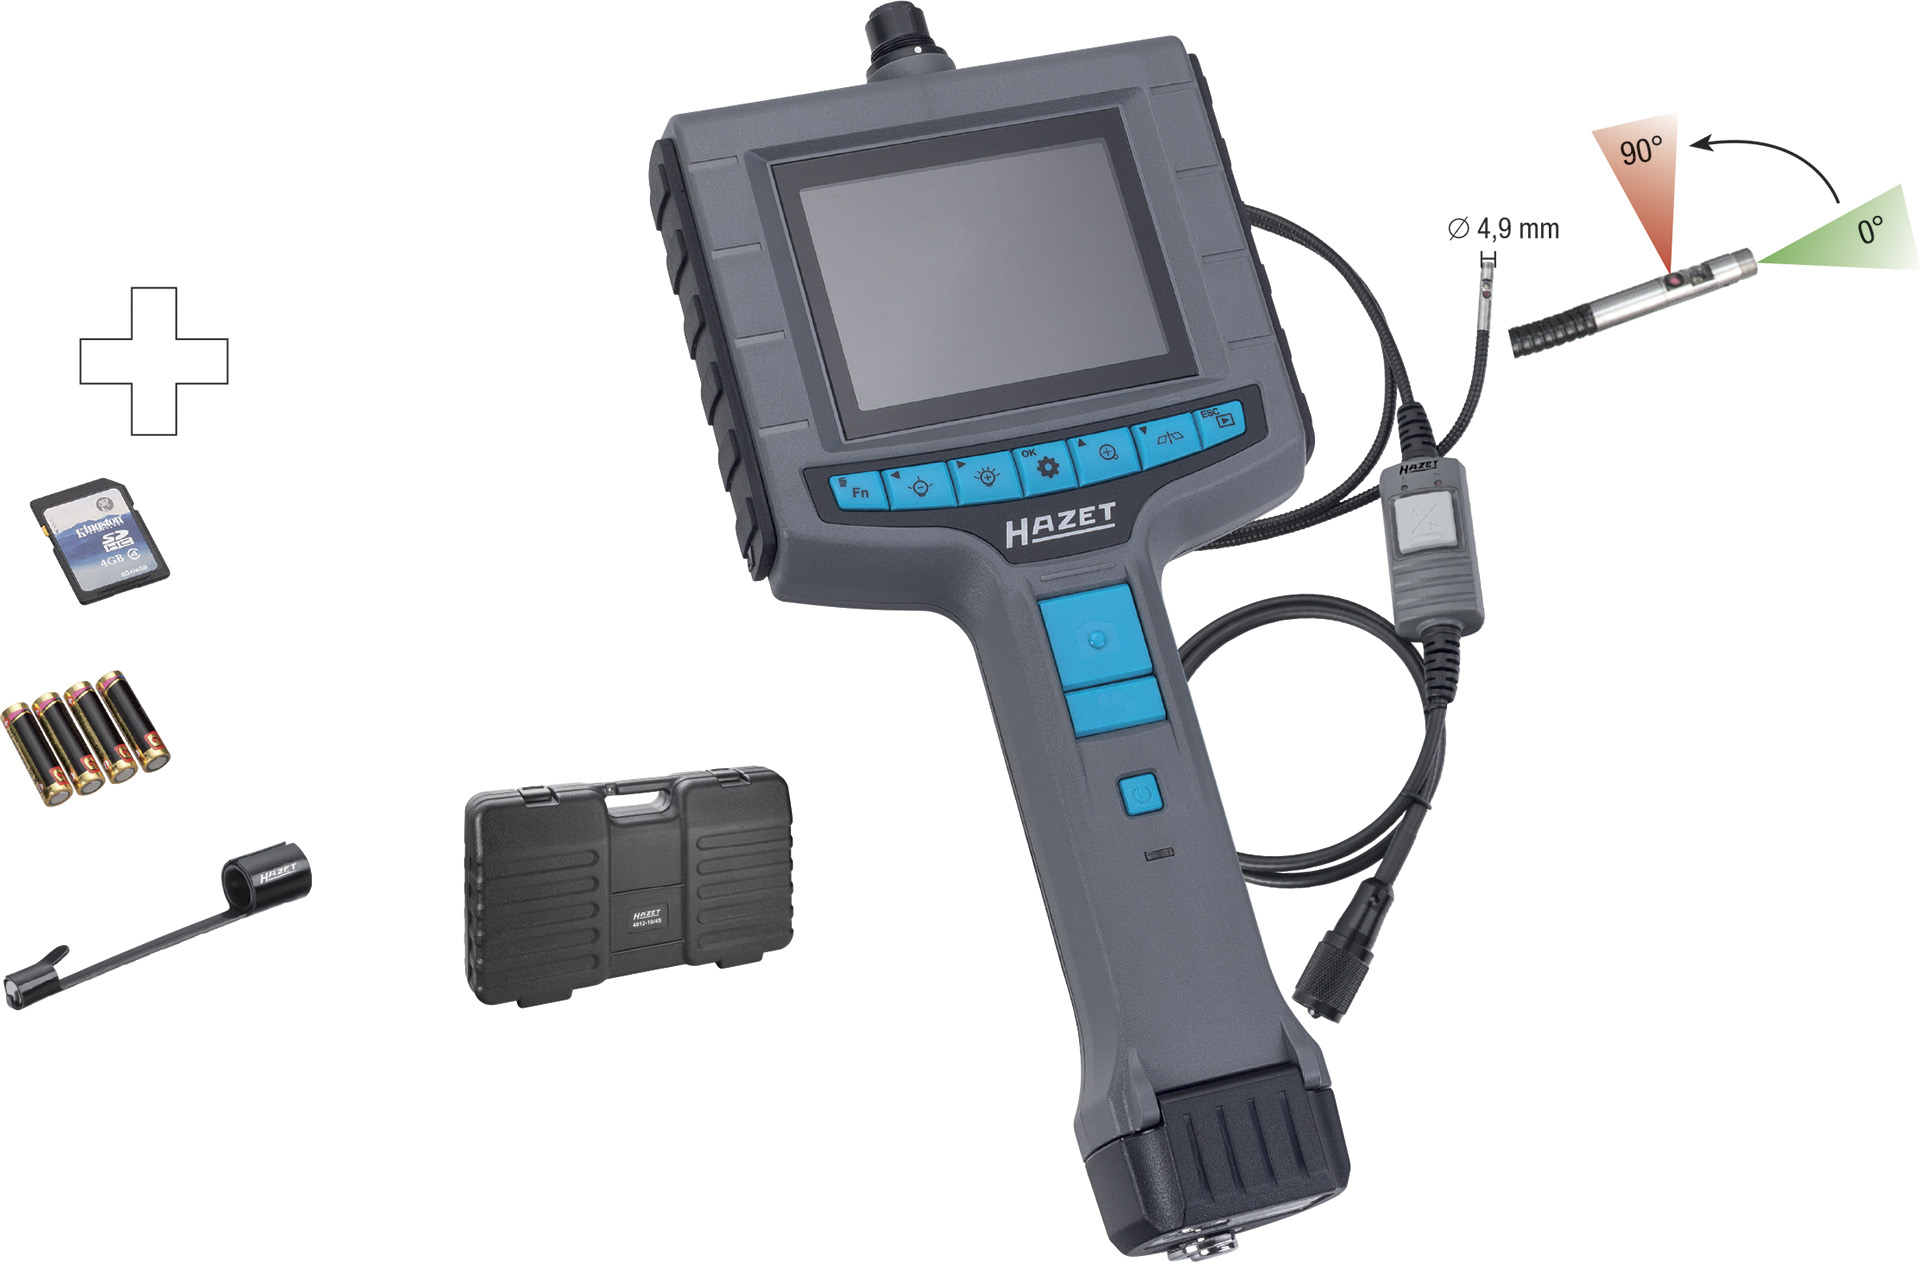 HAZET 4812-30 Sonden-Adapter Für Video-Endoskop